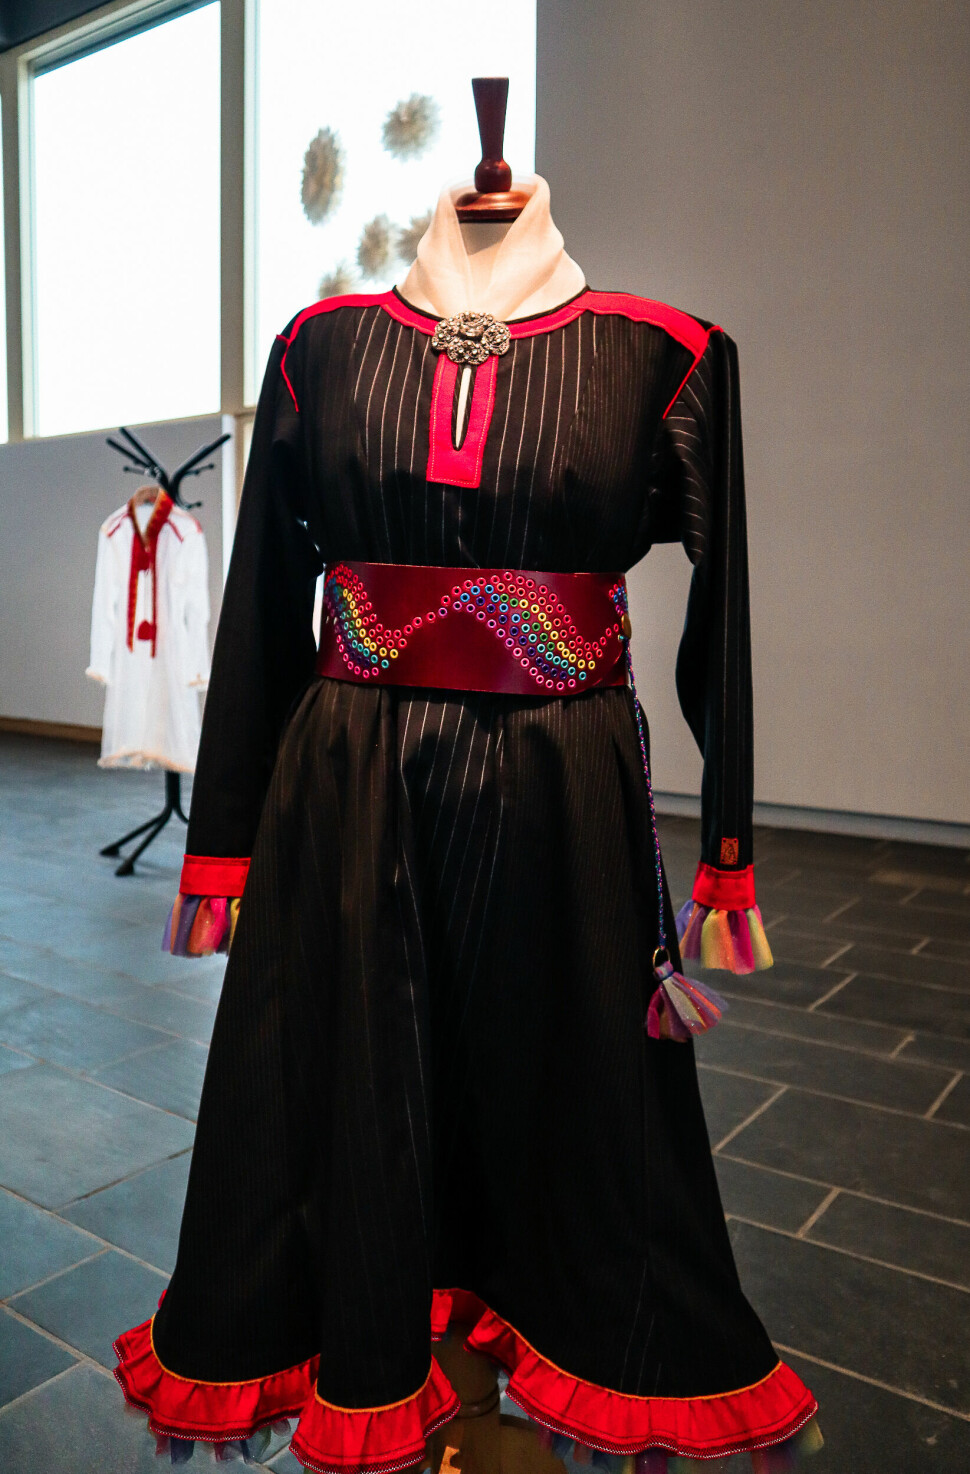 Den ikke-binære samiske kofta som er utstilt under Skeive motstandsbevegelser tilhører Dáveet Bruun-Solbakk.